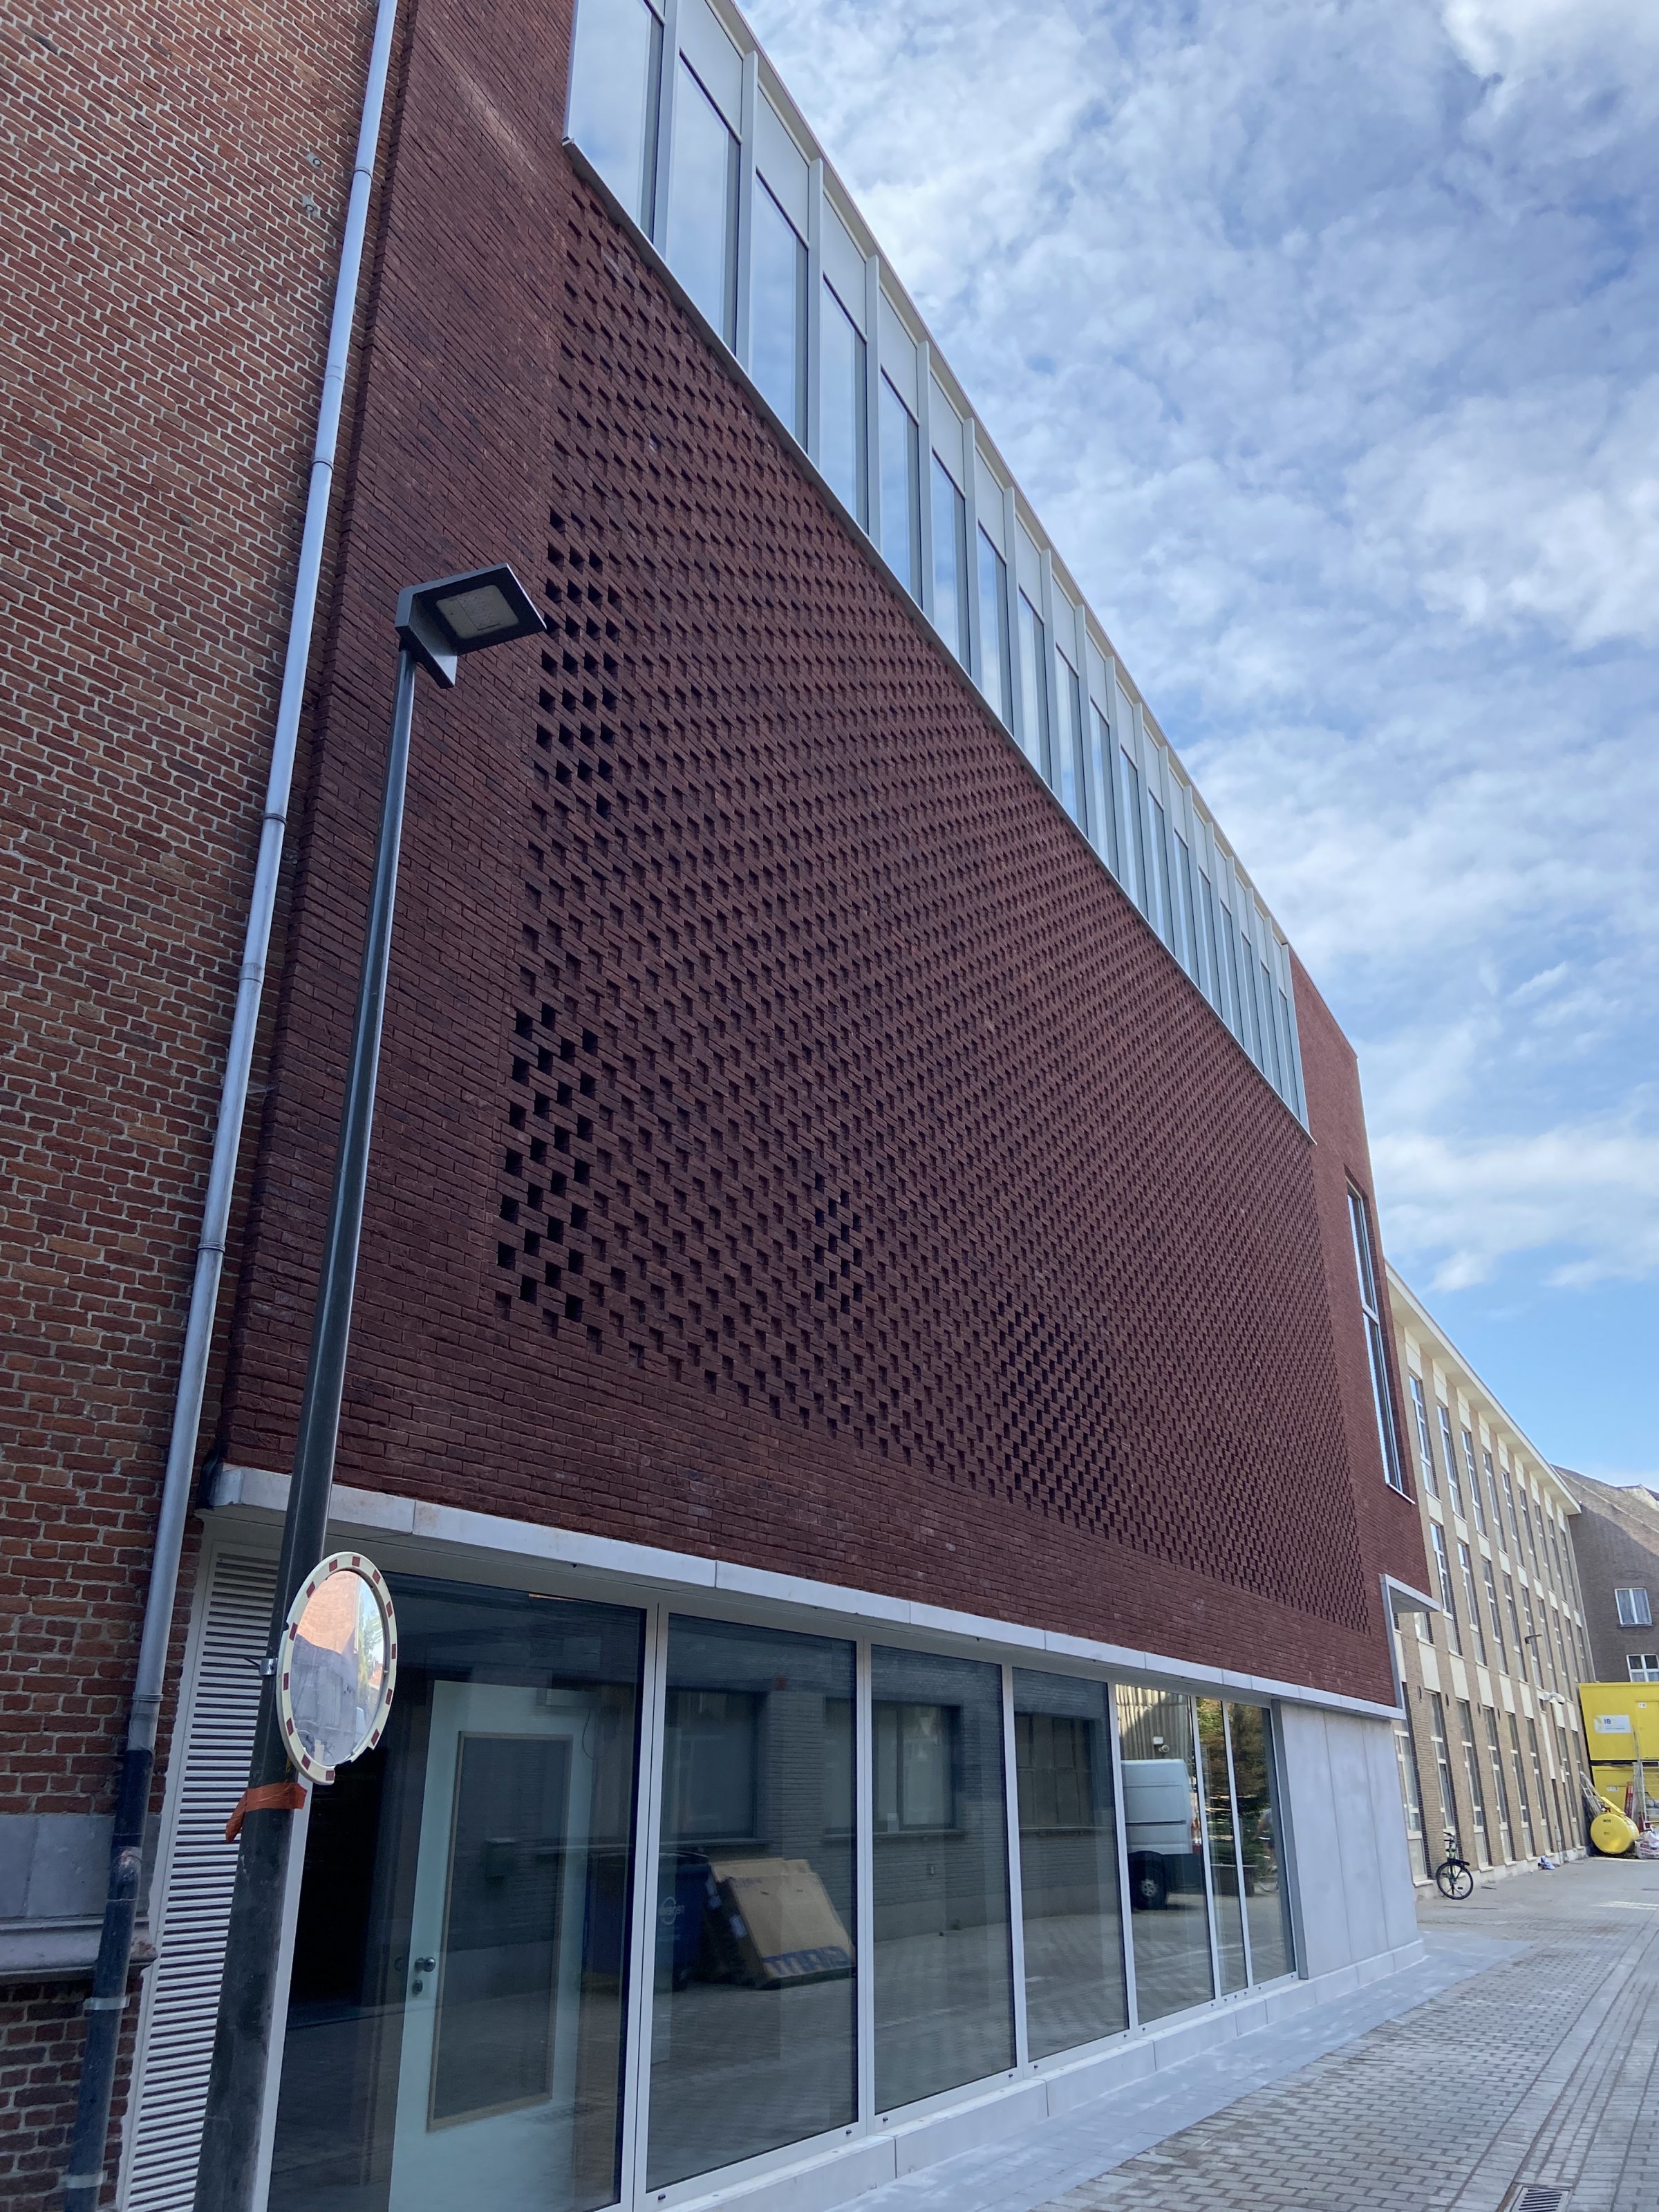 Sportgebouw BimSem Mechelen